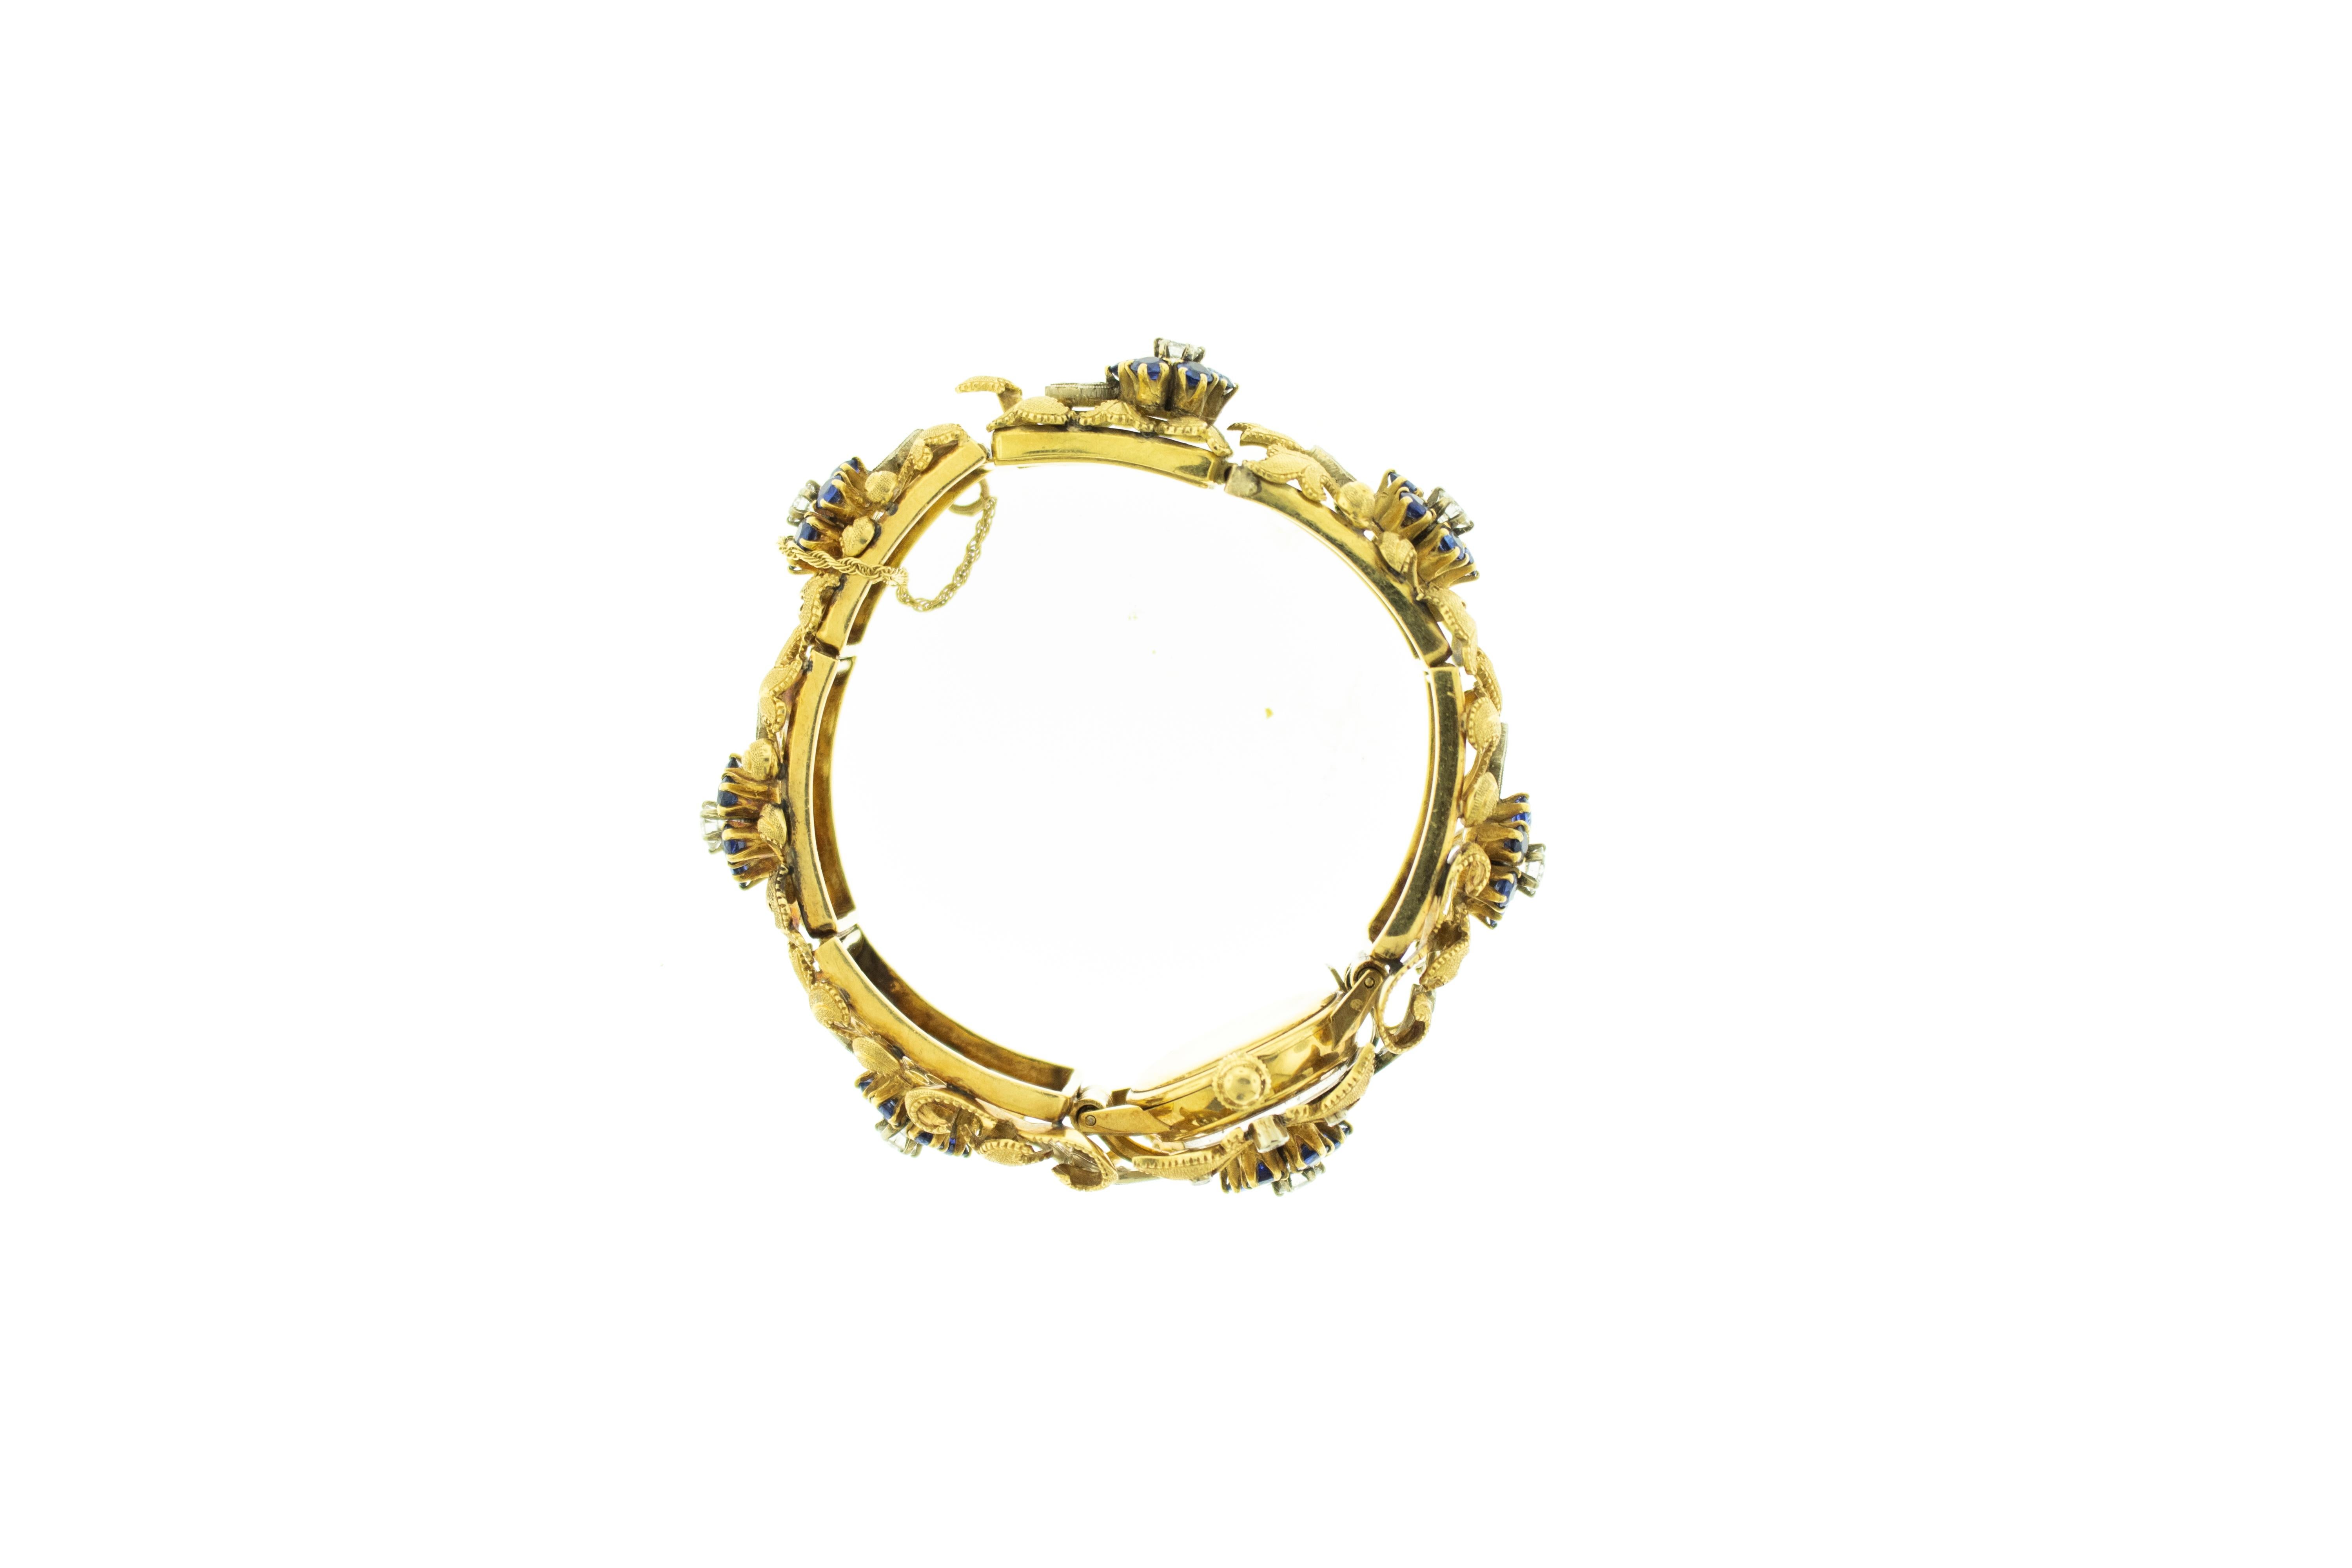 Einzigartiges Armband aus 18k Gold mit Diamanten und Saphiren, kombiniert mit einem 18k Gold Movado Uhrenkopf. Schönes Stück ist eine einzigartige handwerkliche Ehe von Movado Uhr und wunderschönen 18k gebürstetem Gold Armband in der Florentine